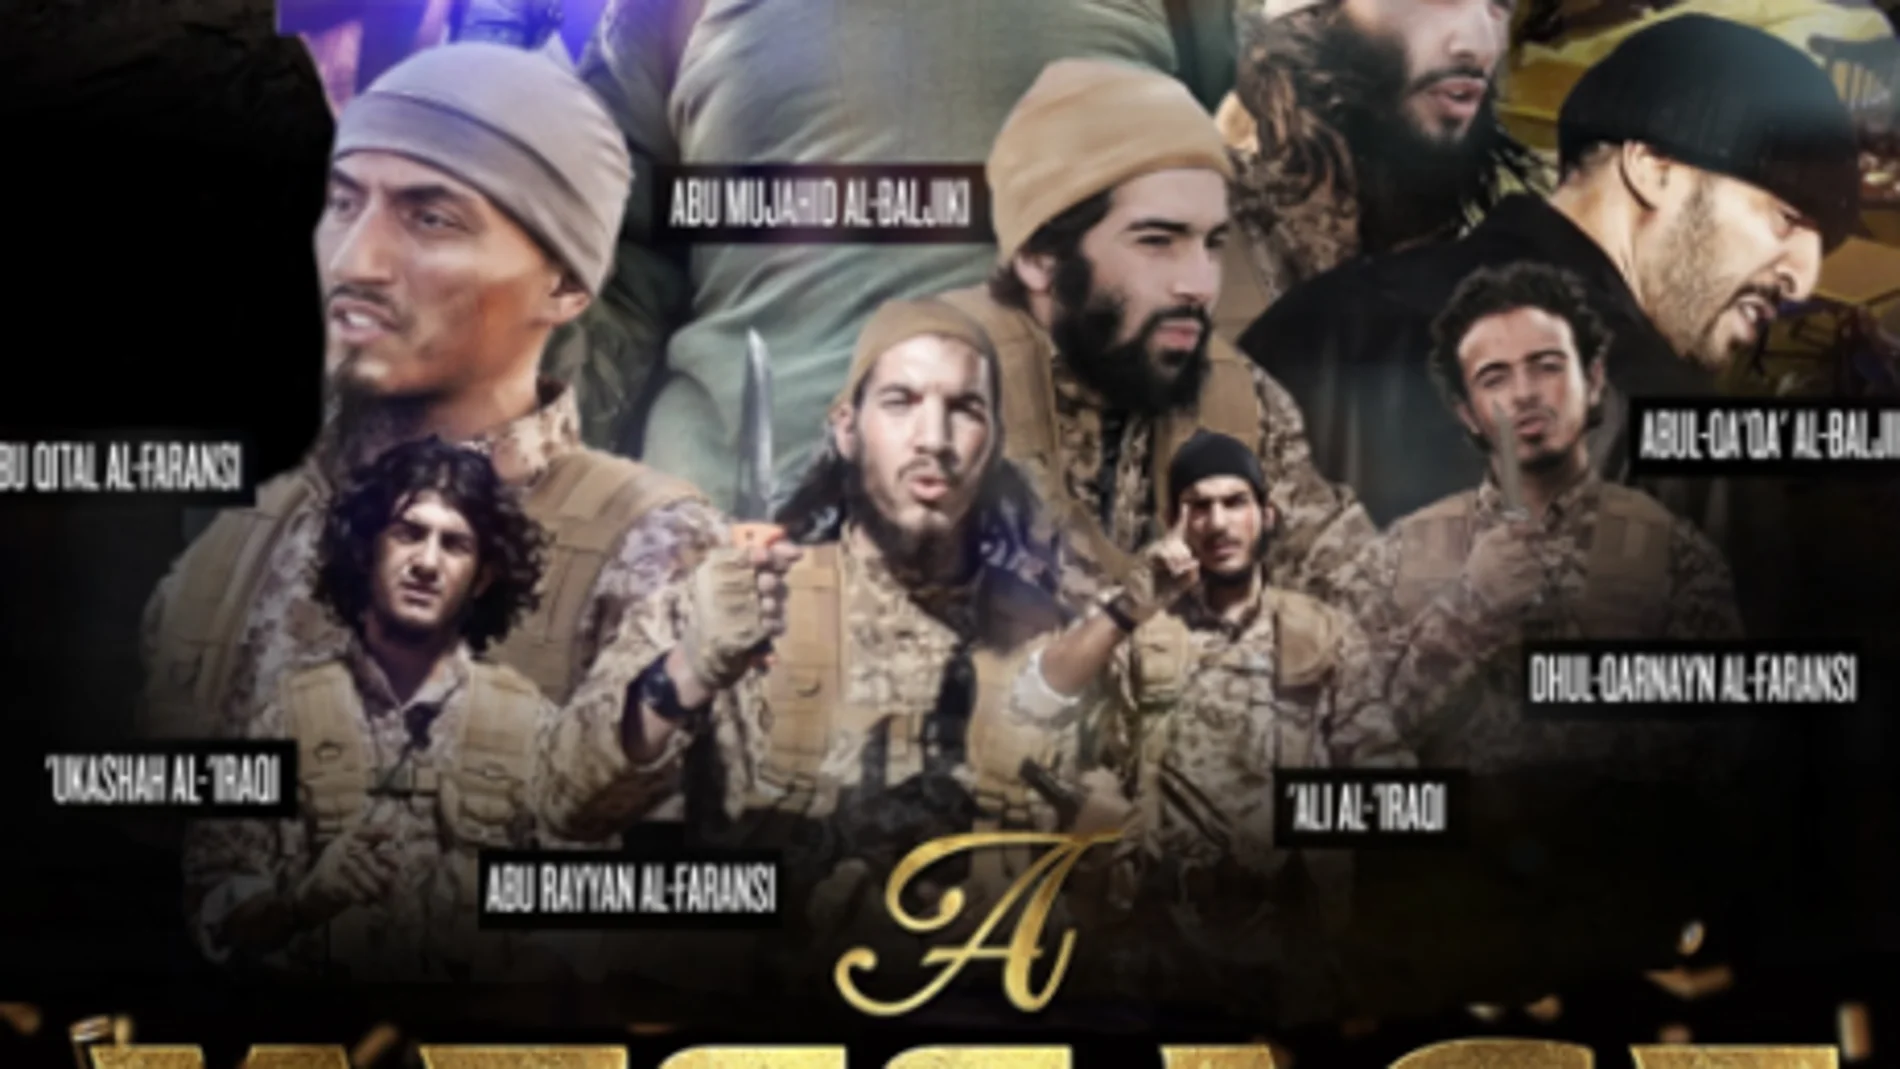 La imagen de portada del artículo muestra a los yihadistas que cometieron los atentados de noviembre de 2015 en París